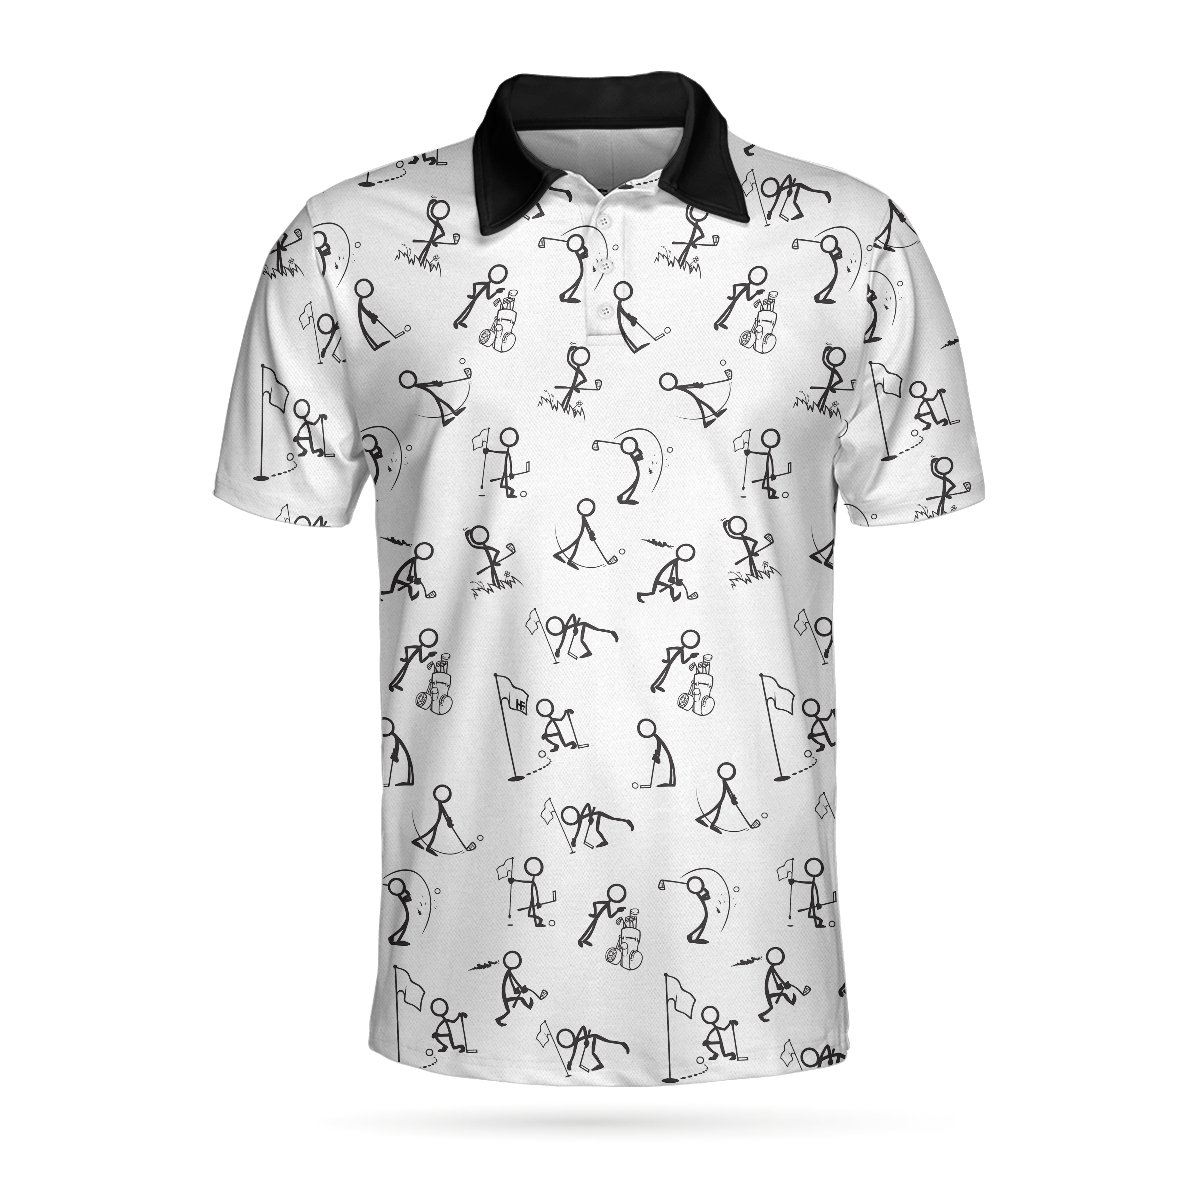 Stickfigures Playing Golf Polo Shirt – 9X Print